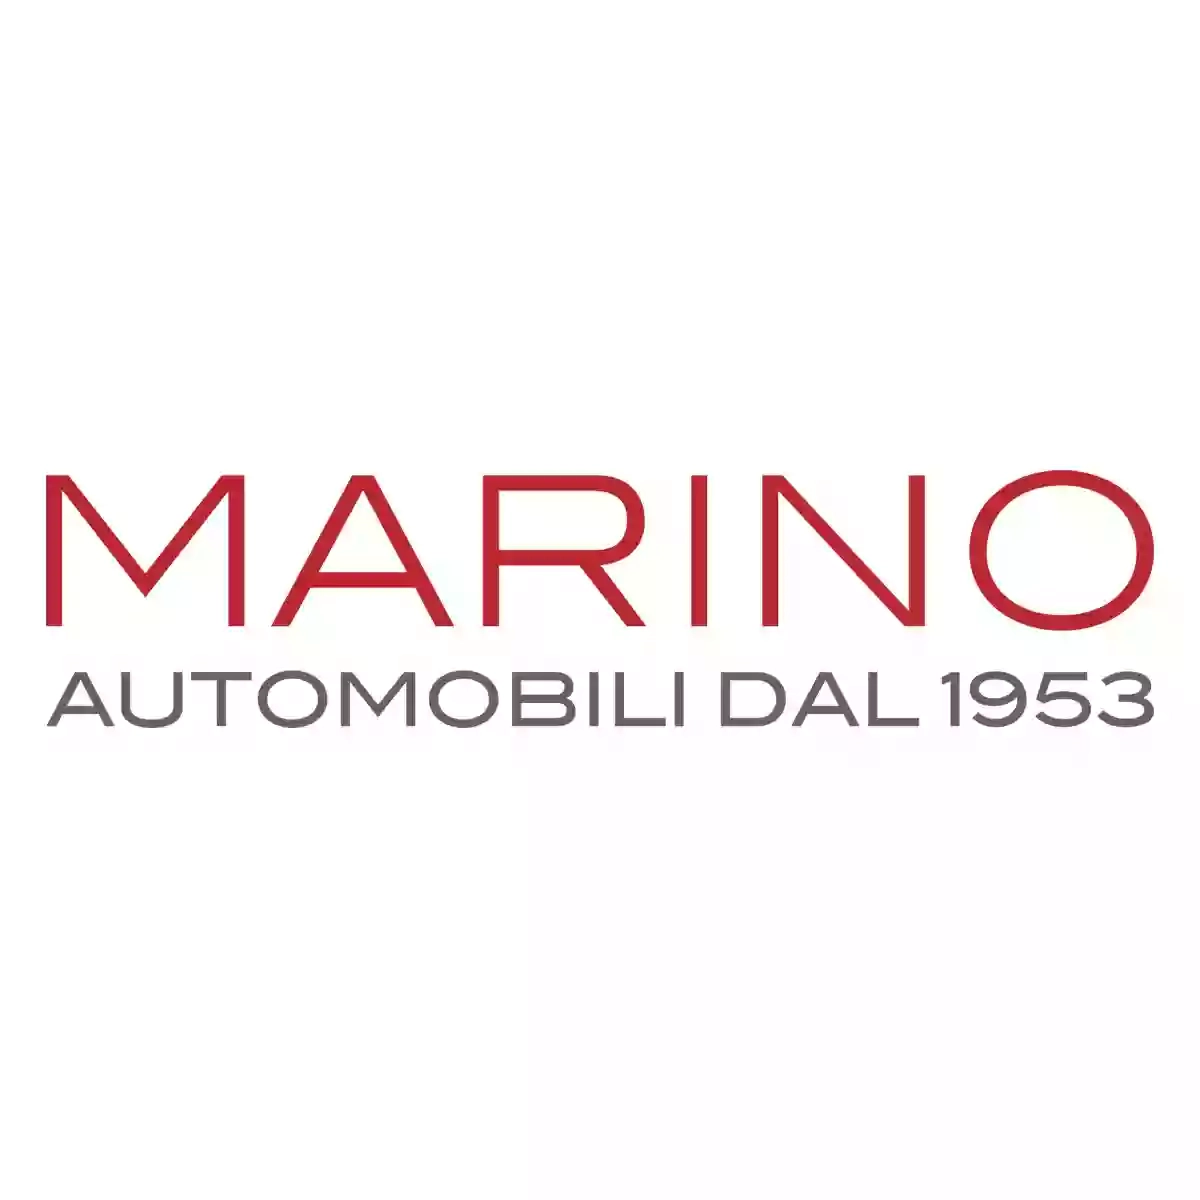 Marino Automobili / Bari via Amendola - Auto Usate, Km0 e Semestrali